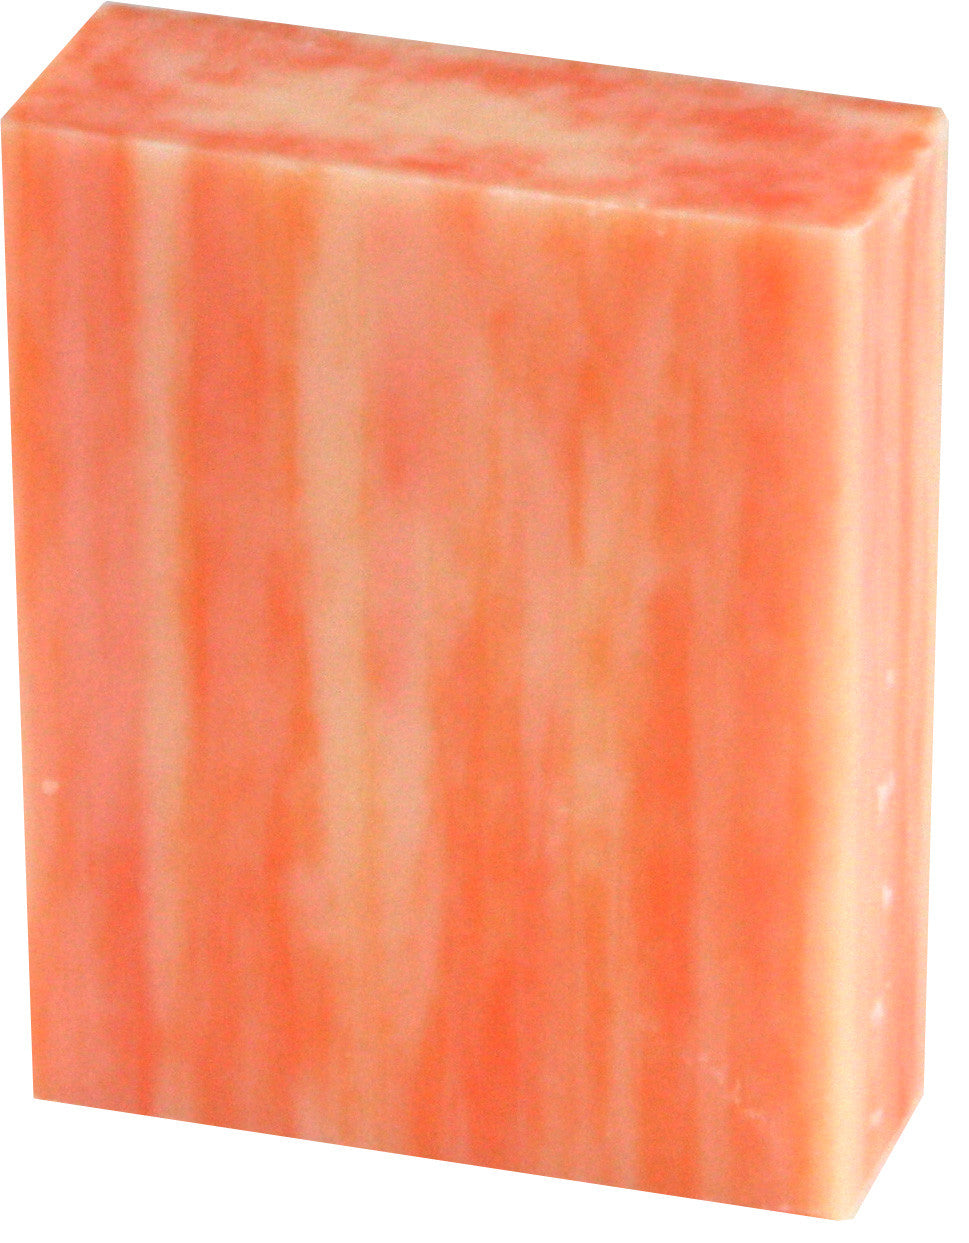 Orange soap bar